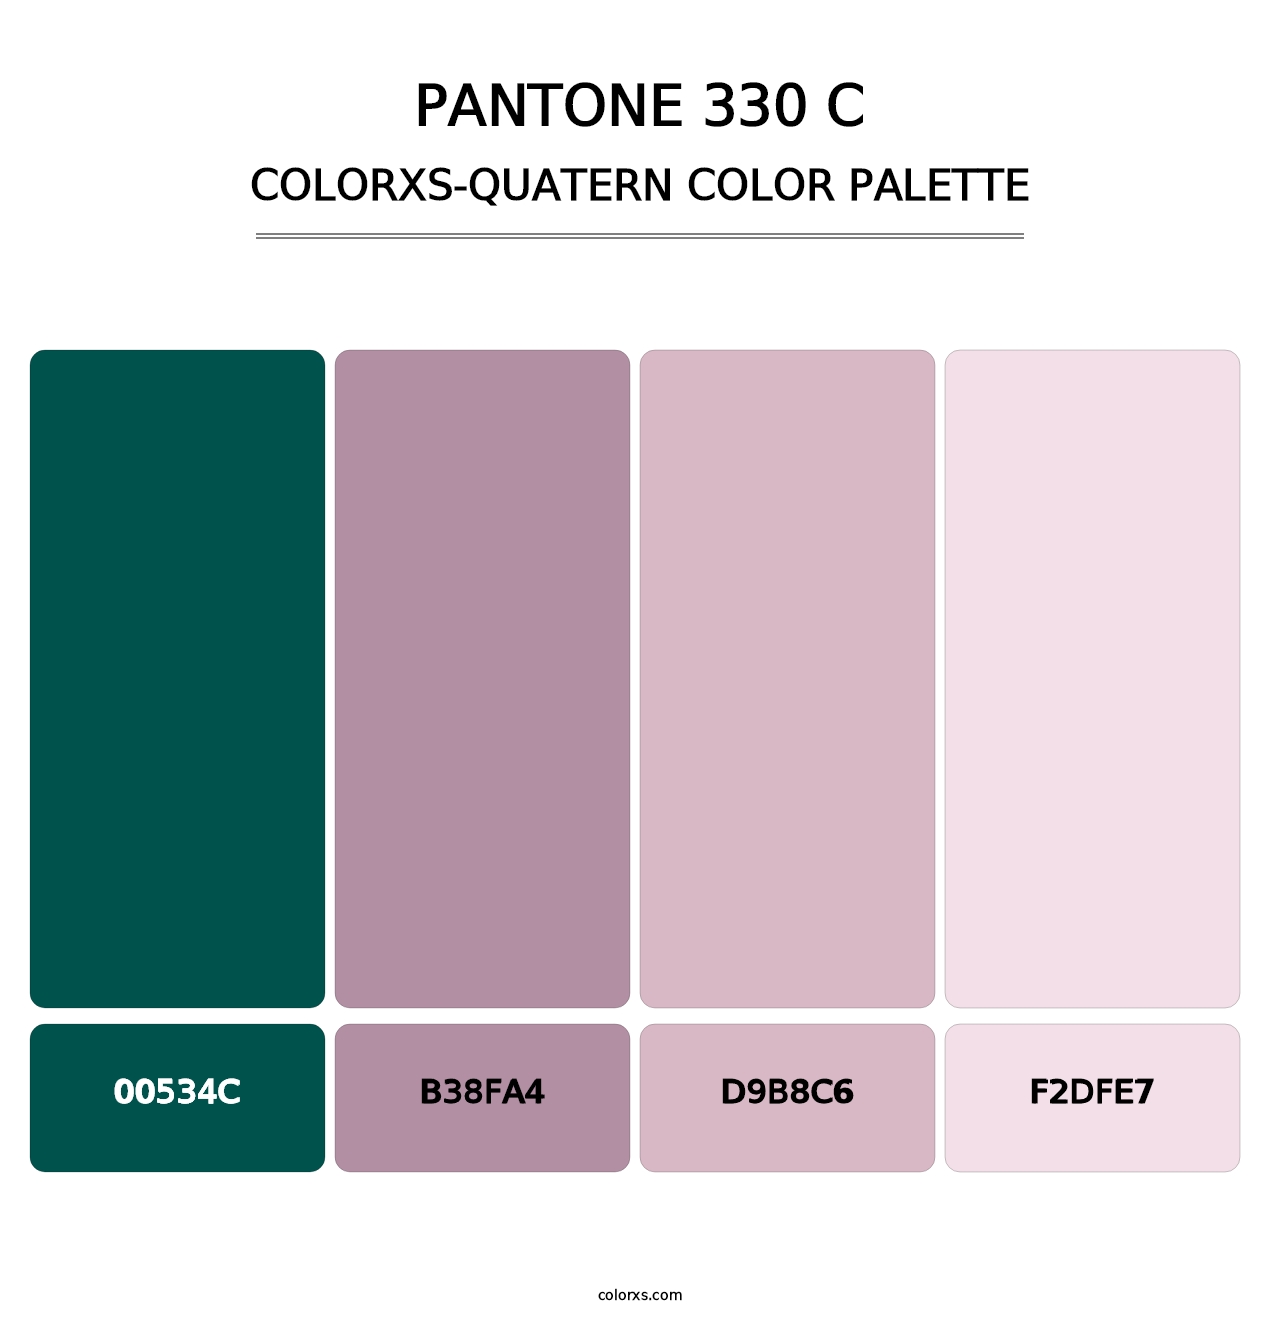 PANTONE 330 C - Colorxs Quatern Palette